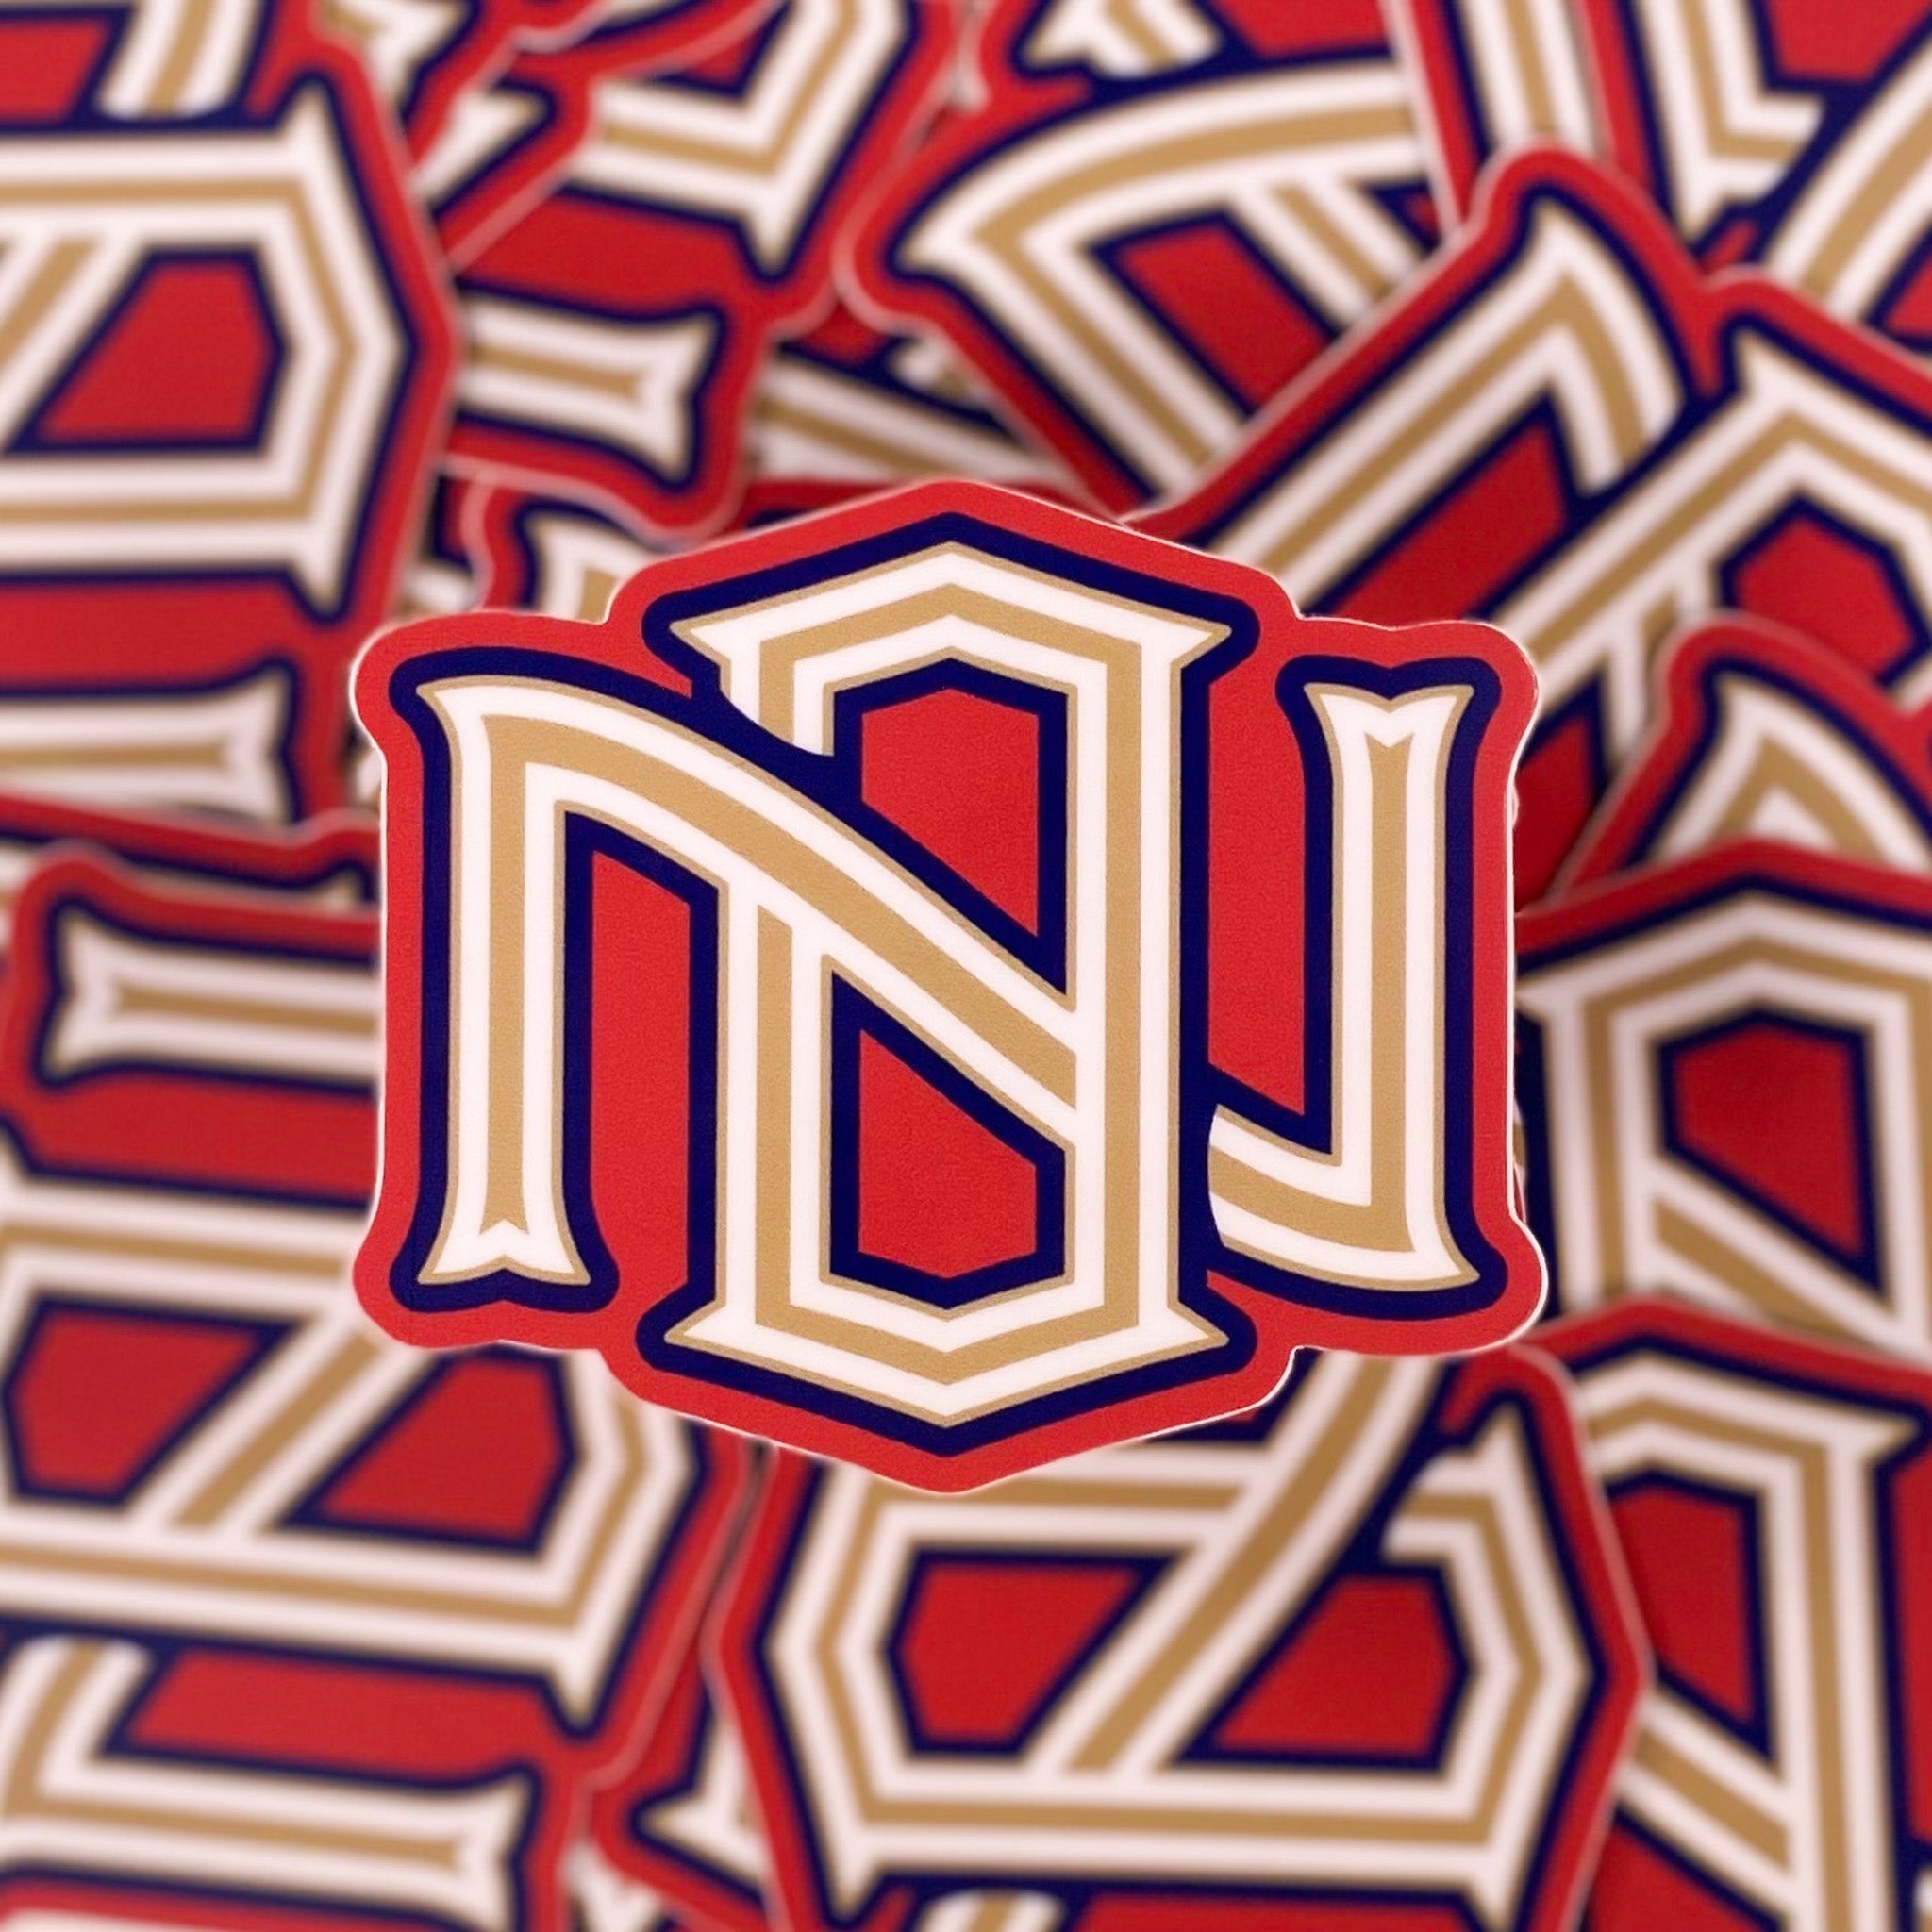 N. O. Icon Sticker - Dirty Coast Press